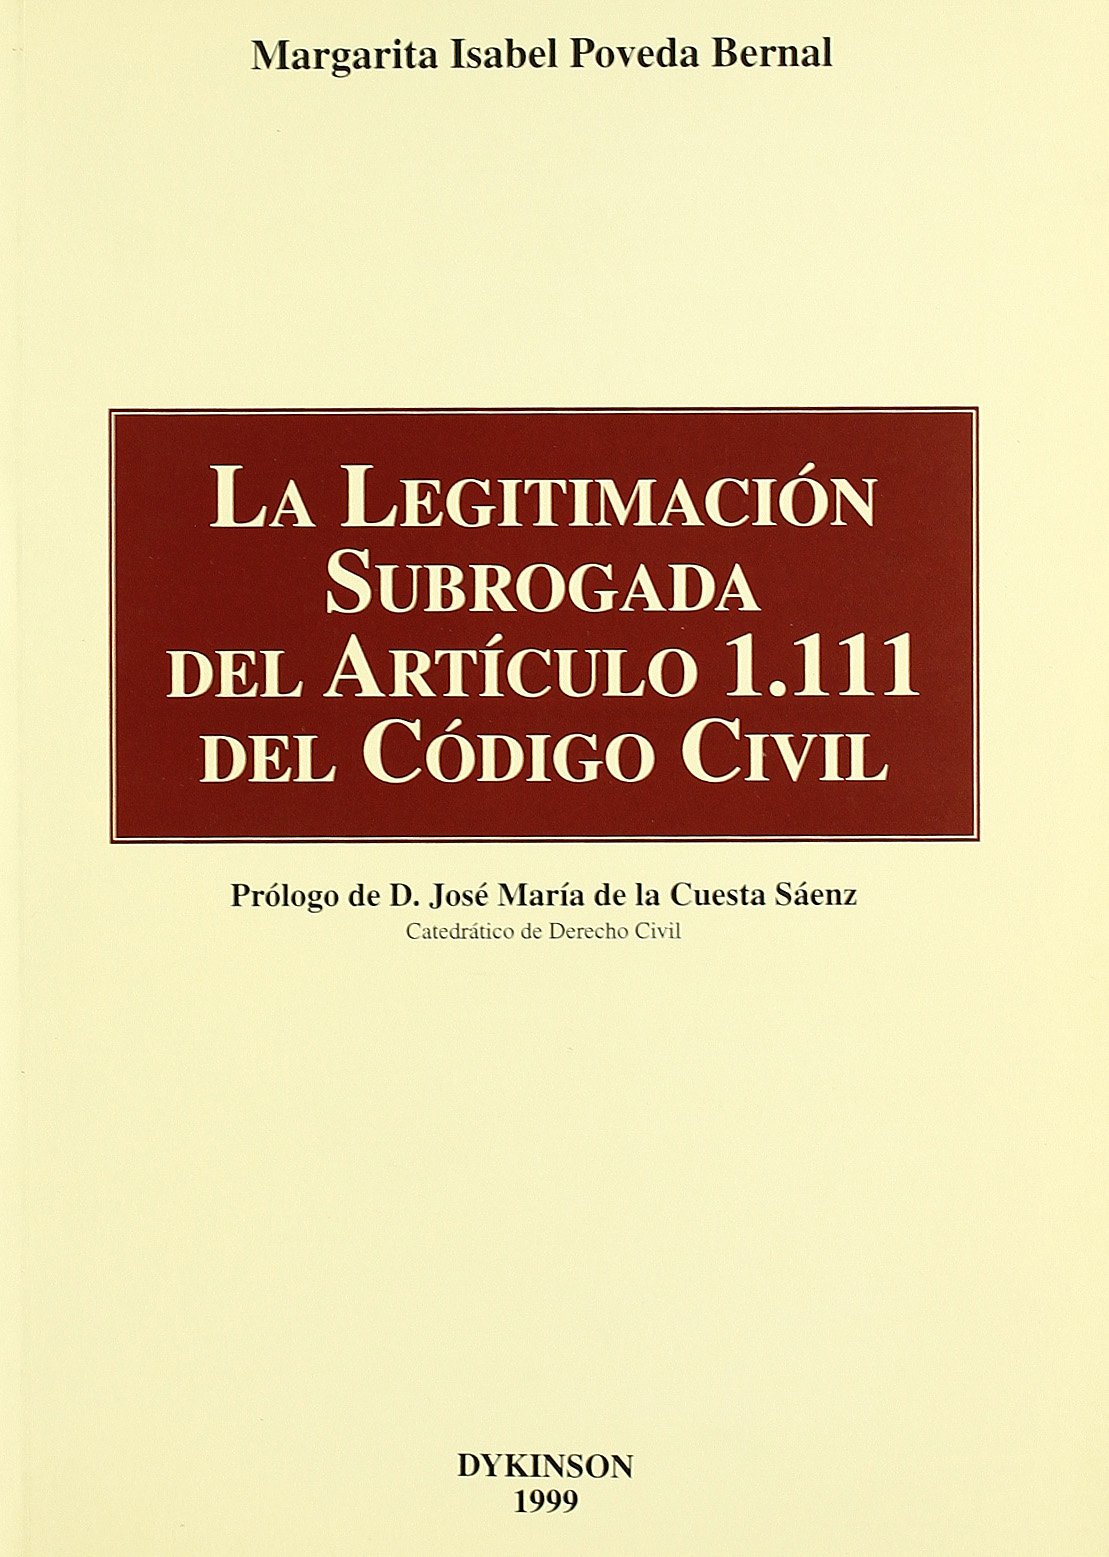 La legitimación subrogada del articulo 1.111 del Codigo civil